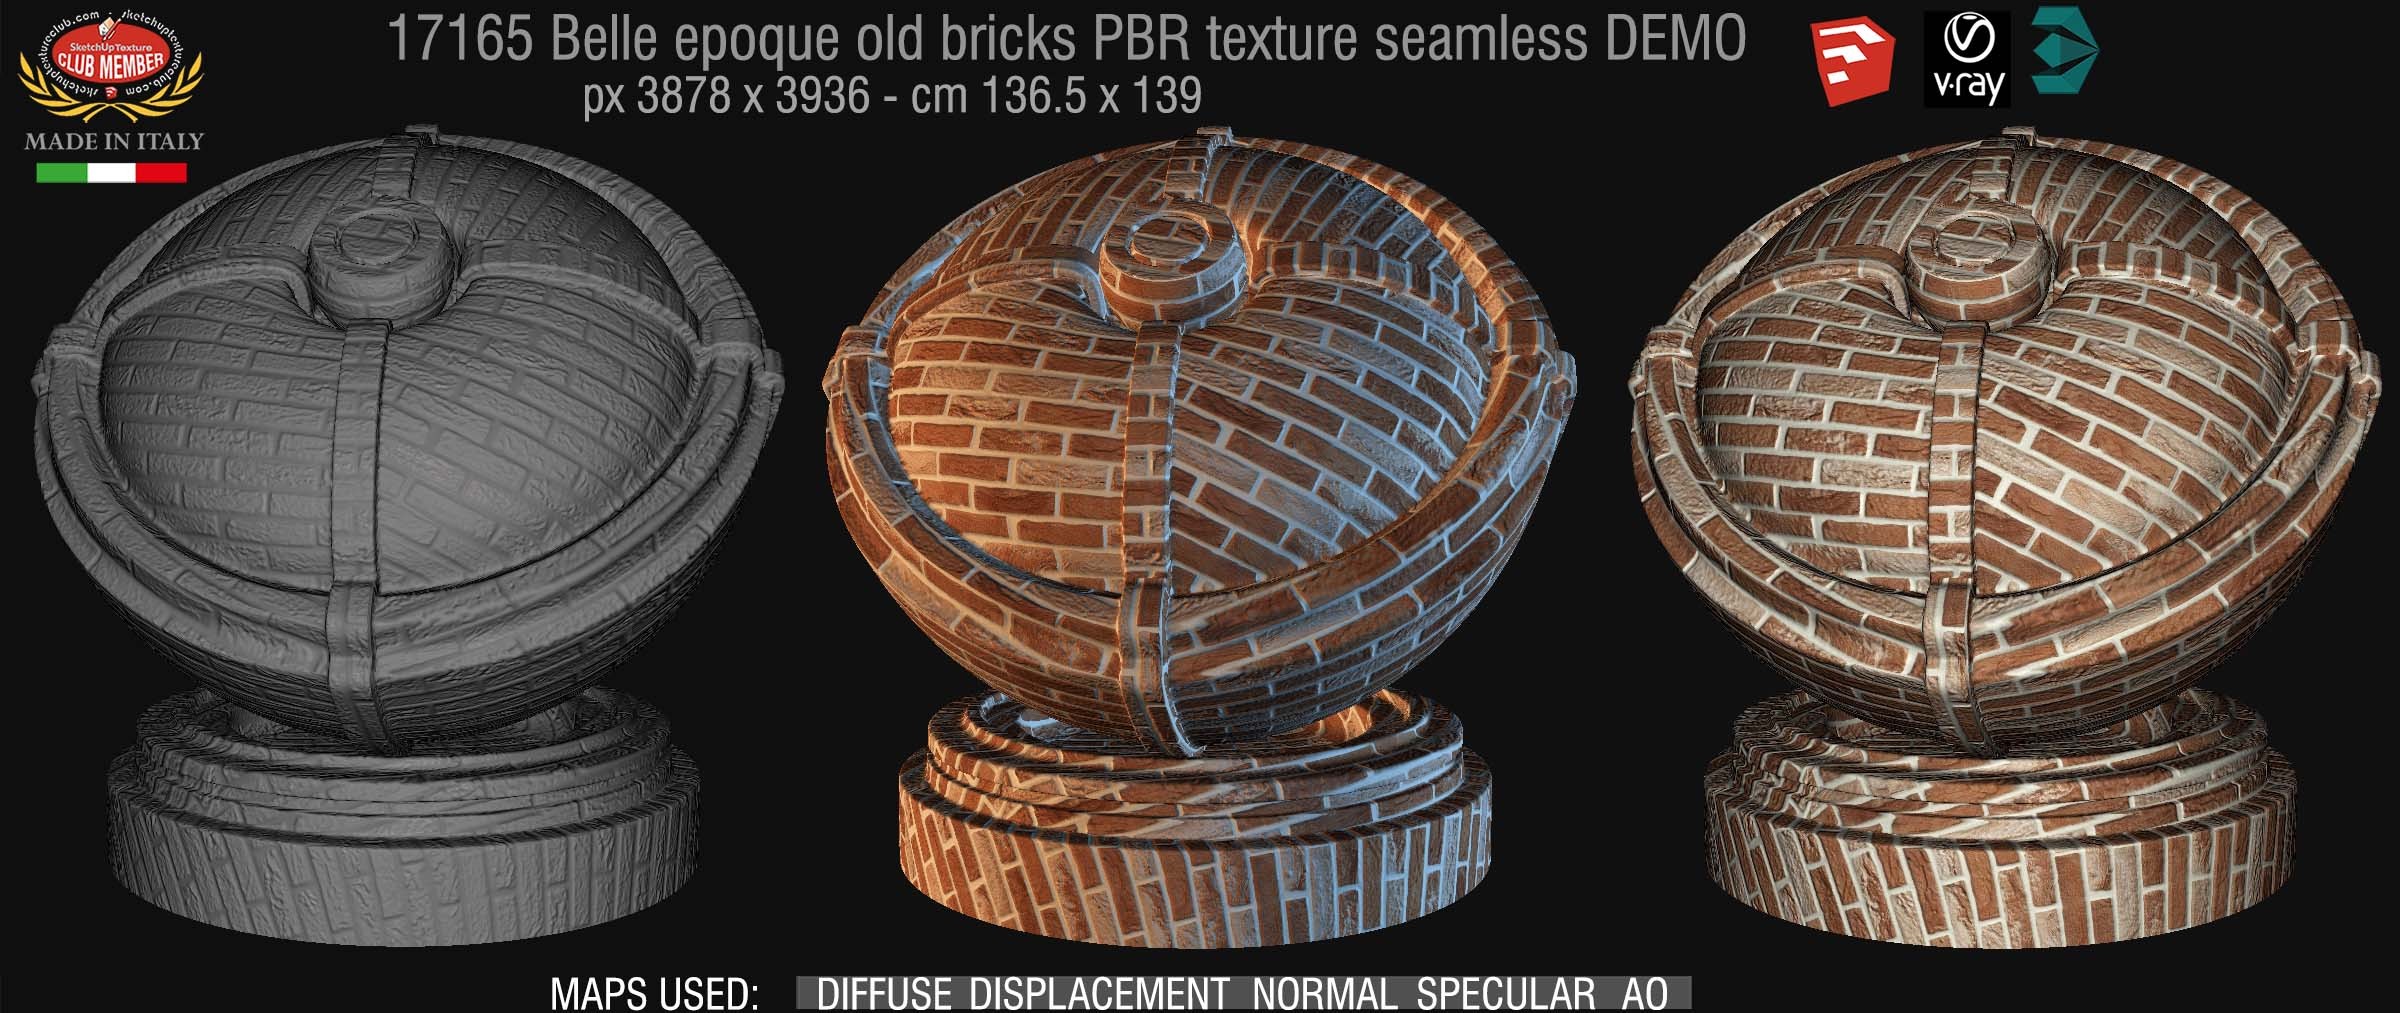 17165 Belle epoque old bricks PBR texture seamless DEMO